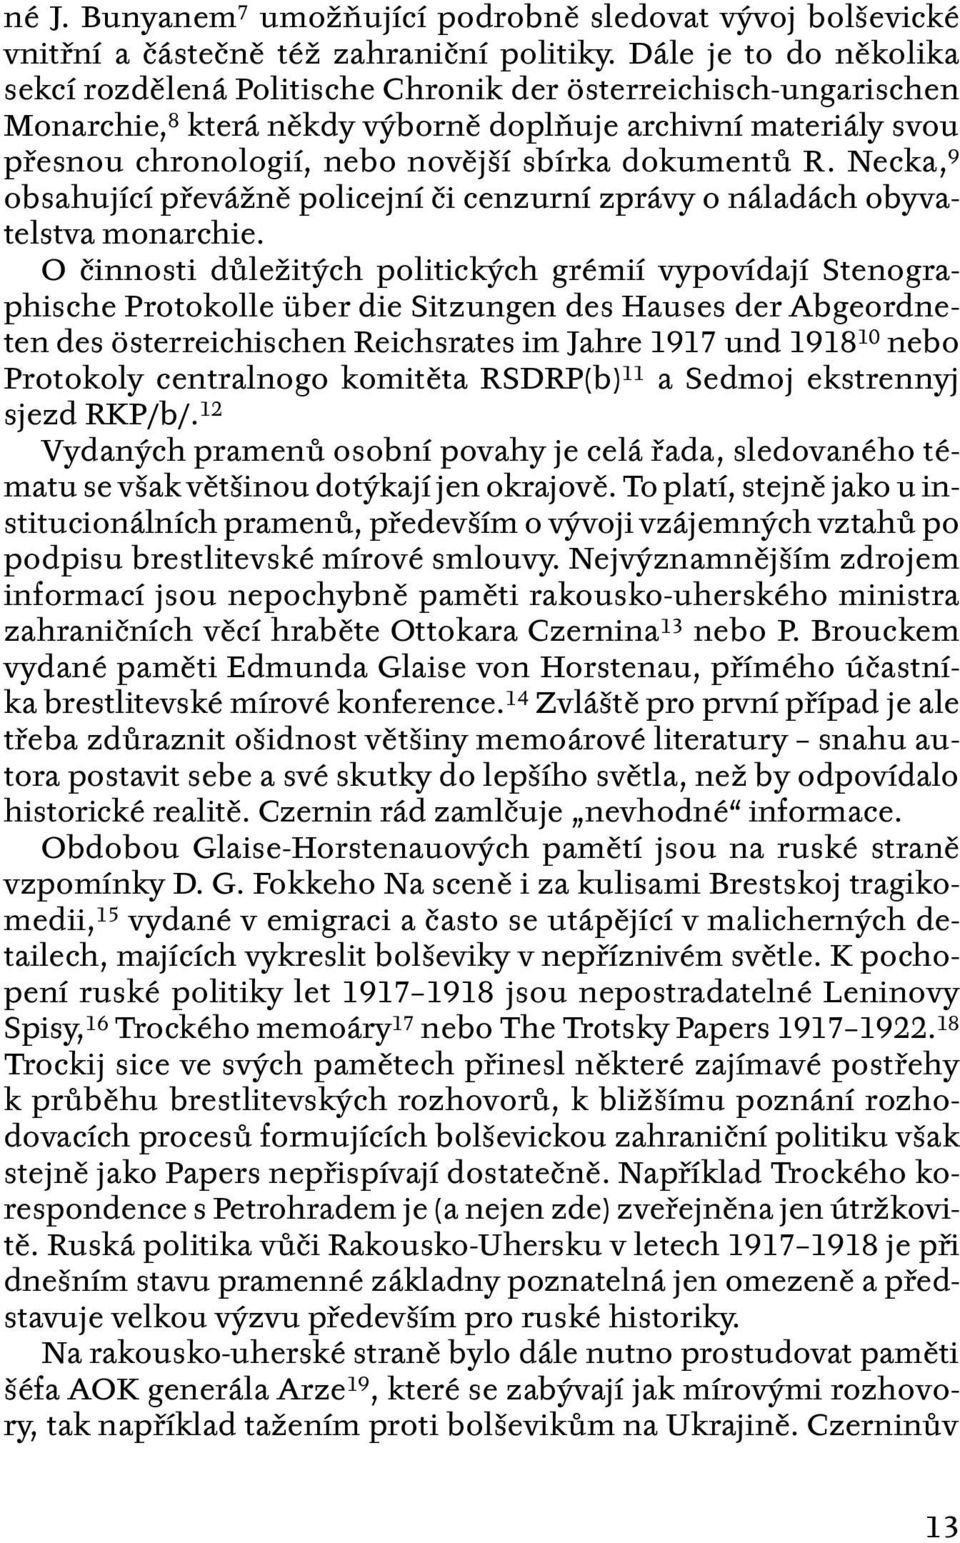 dokumentů R. Necka, 9 obsahující převážně policejní či cenzurní zprávy o náladách obyvatelstva monarchie.